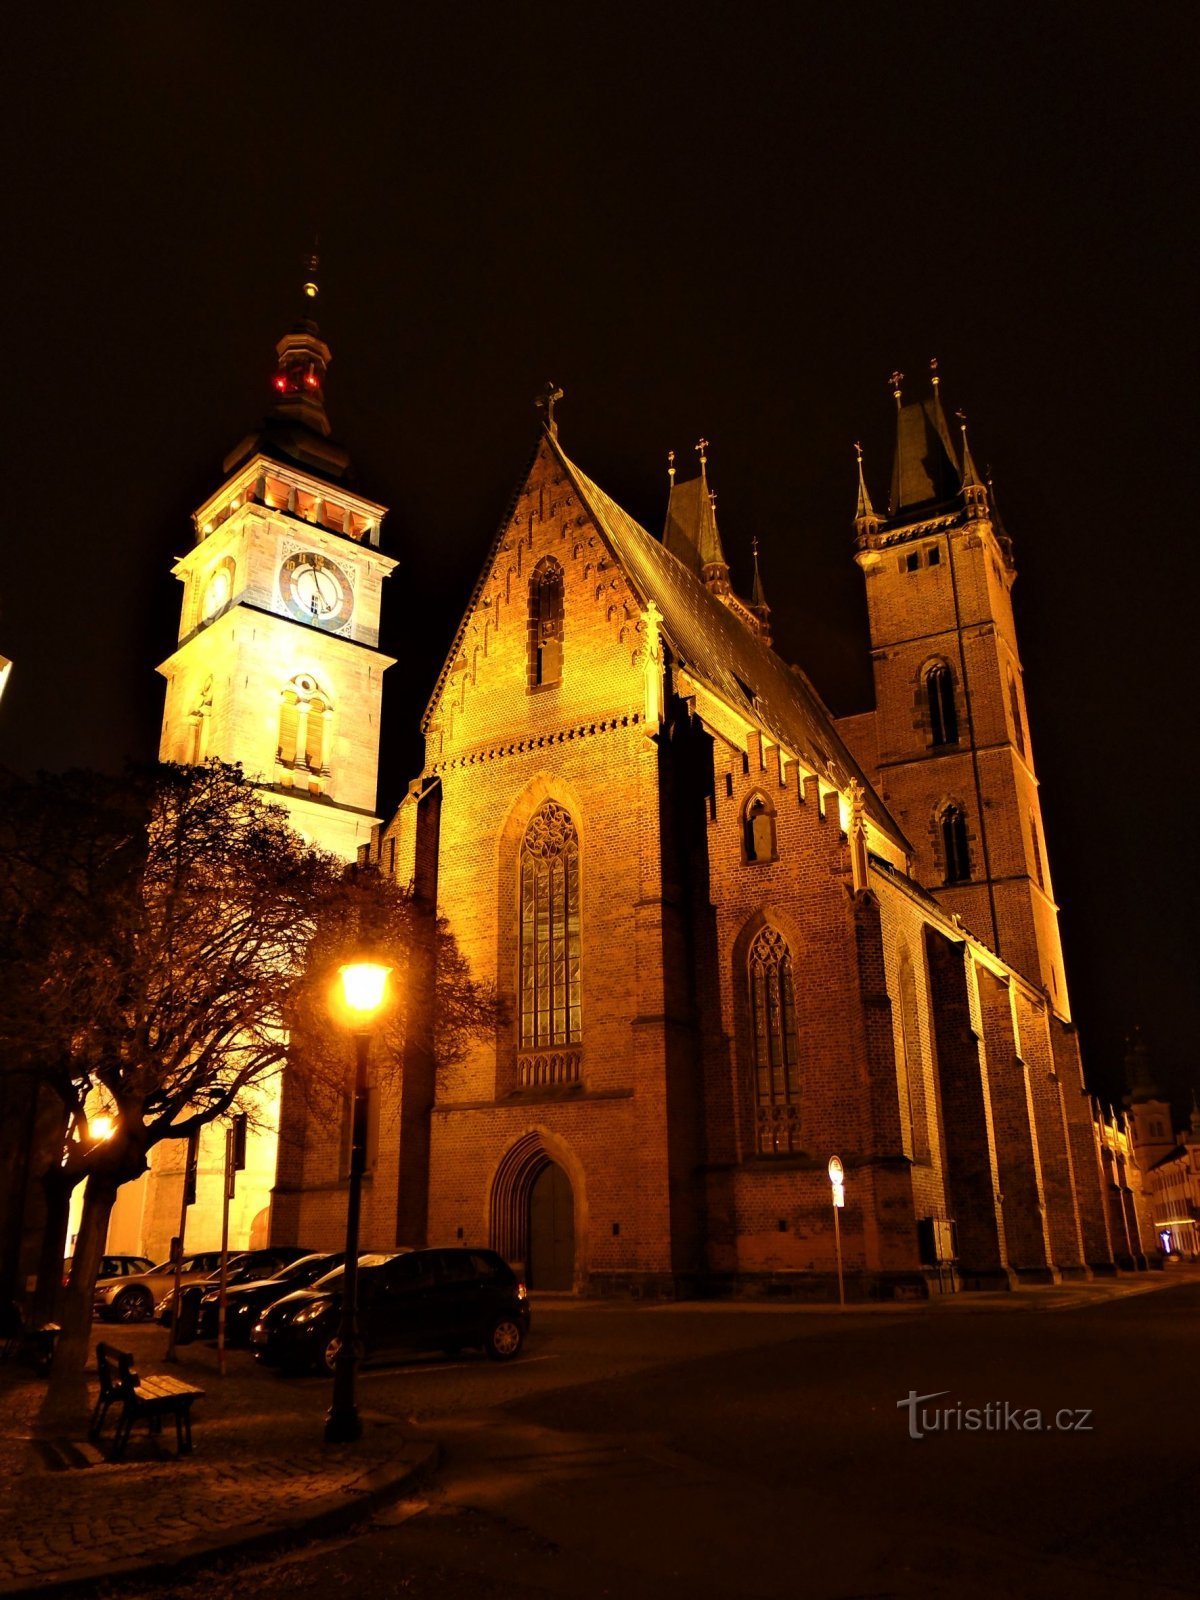 ホワイトタワーとセントルイス大聖堂。 スピリット (Hradec Králové、13.12.2020 年 XNUMX 月 XNUMX 日)